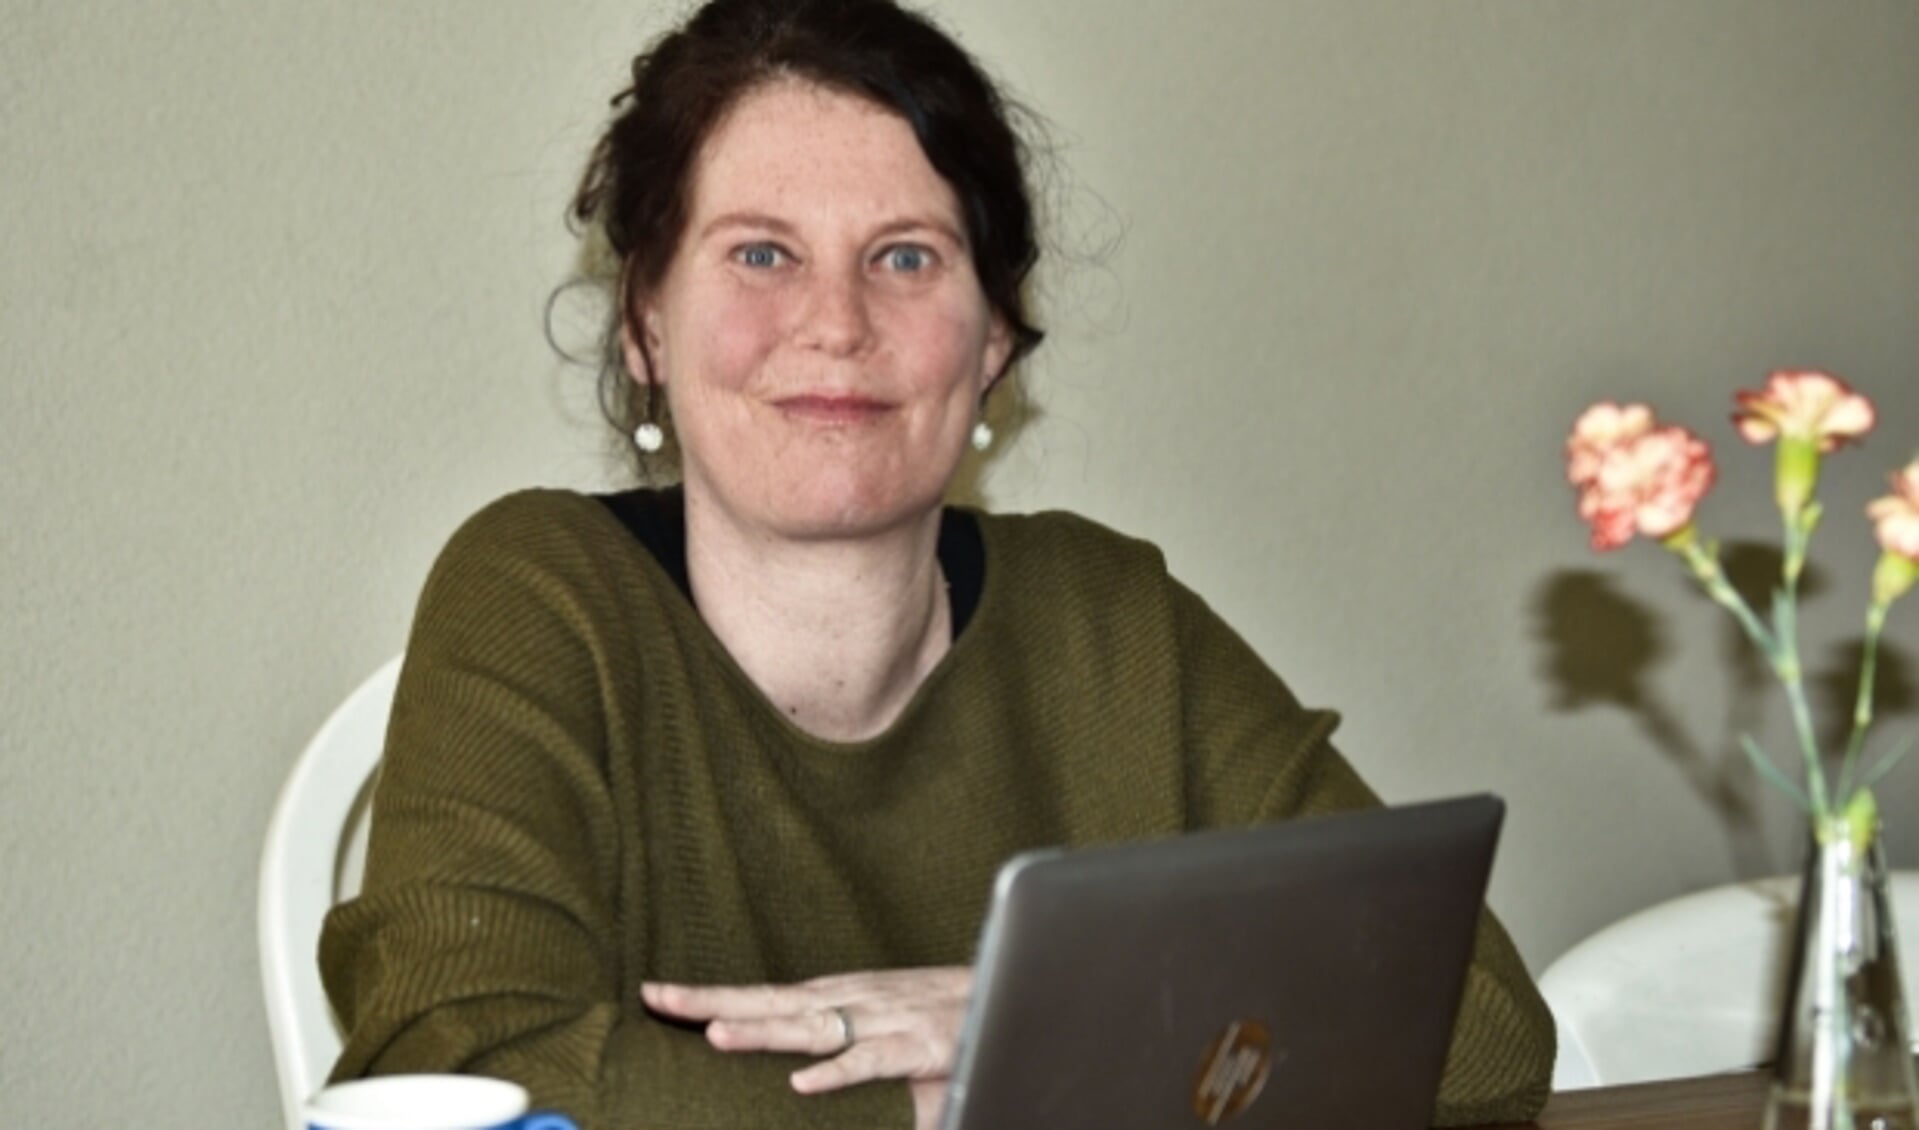 Nicole van Lierop is chatvrijwilliger bij de Luisterlijn. Ze is een van de vijftig geportretteerde Bossche vrijwilligers in de campagne die deze week van start is gegaan.